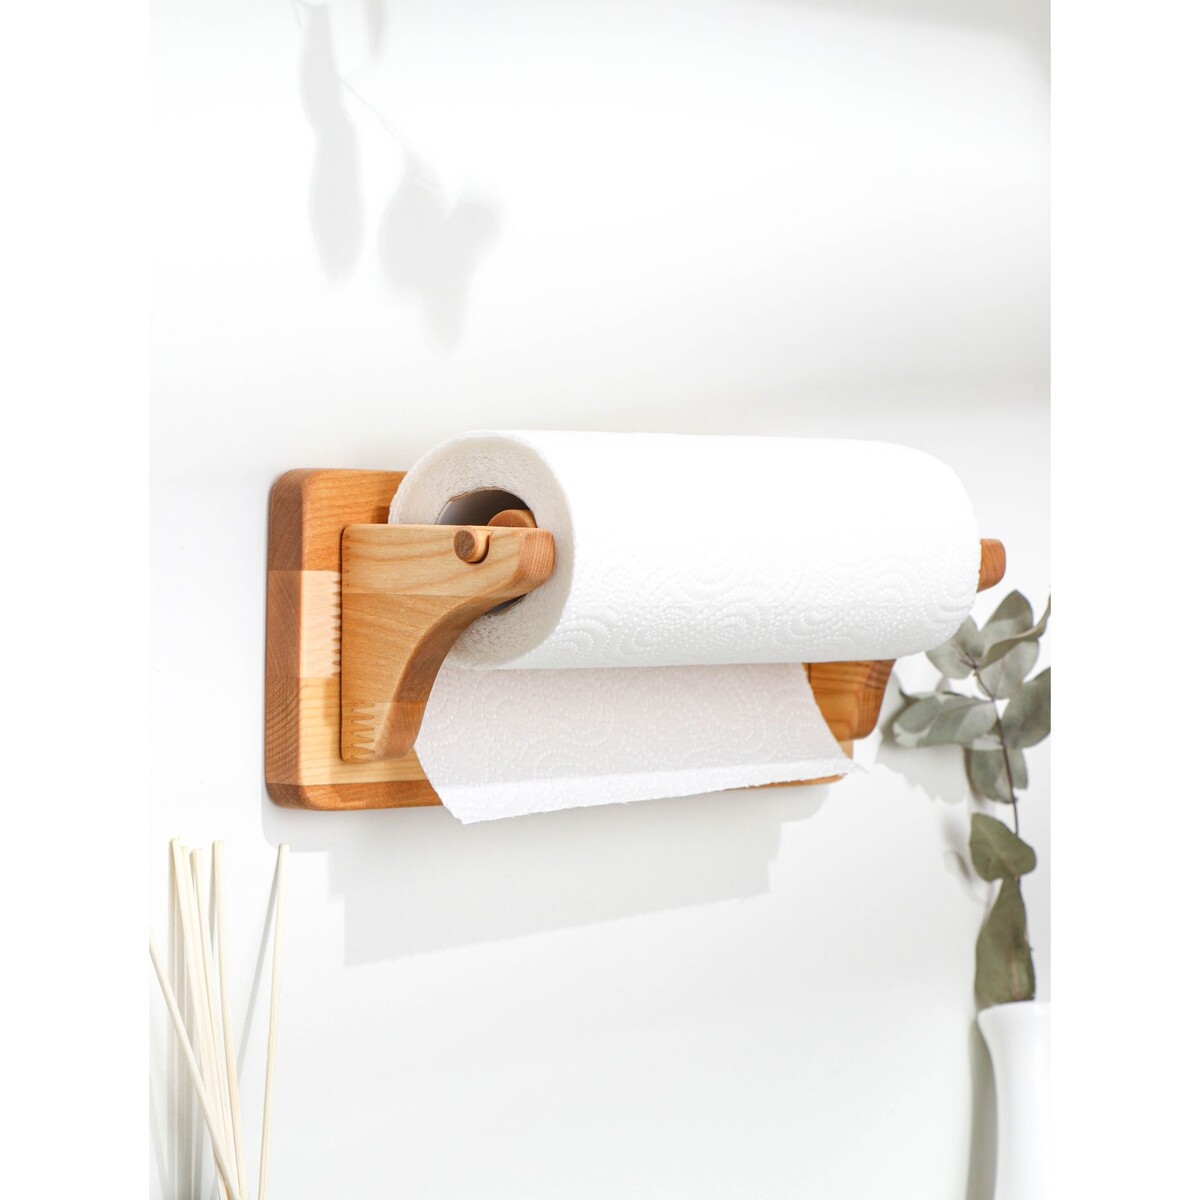 Держатель для бумажных полотенец настенный, береза, 30,5×11,5 см держатель для бумажных полотенец 31 см wmf gourmet